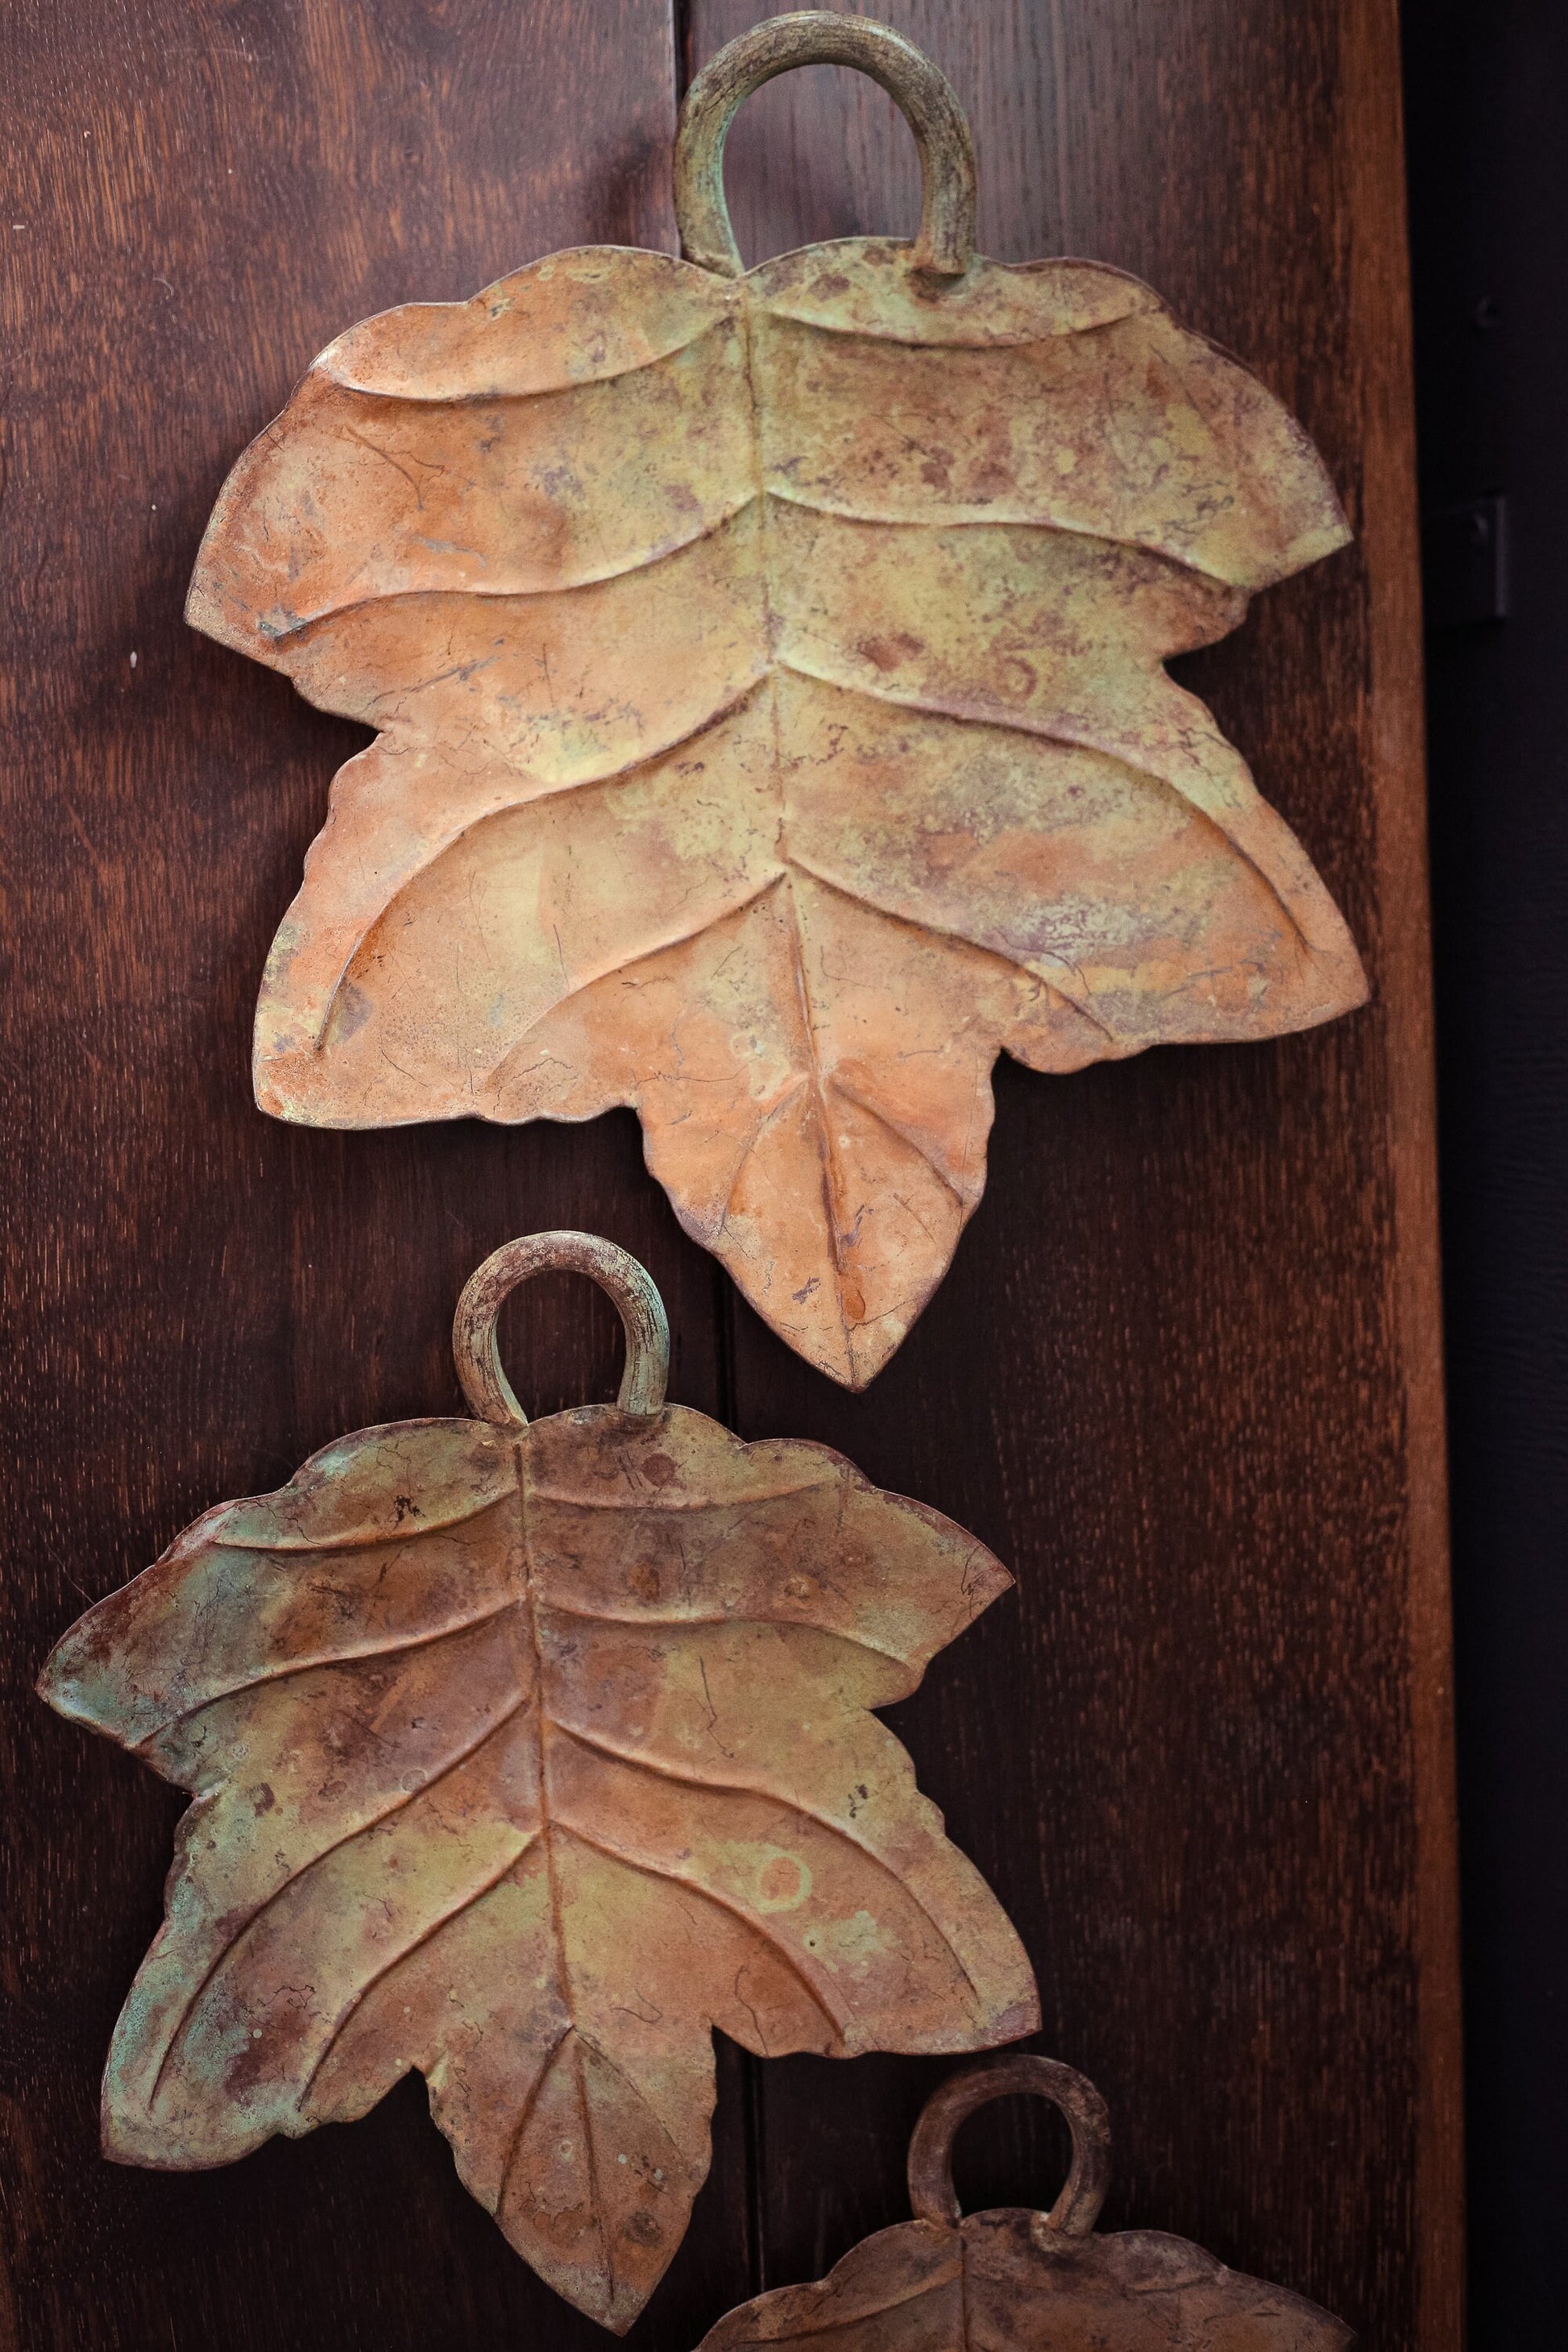 Trio of Metal Leaf Trays - Set of 3 Vintage Rust/Patina Finish Trays Leaves